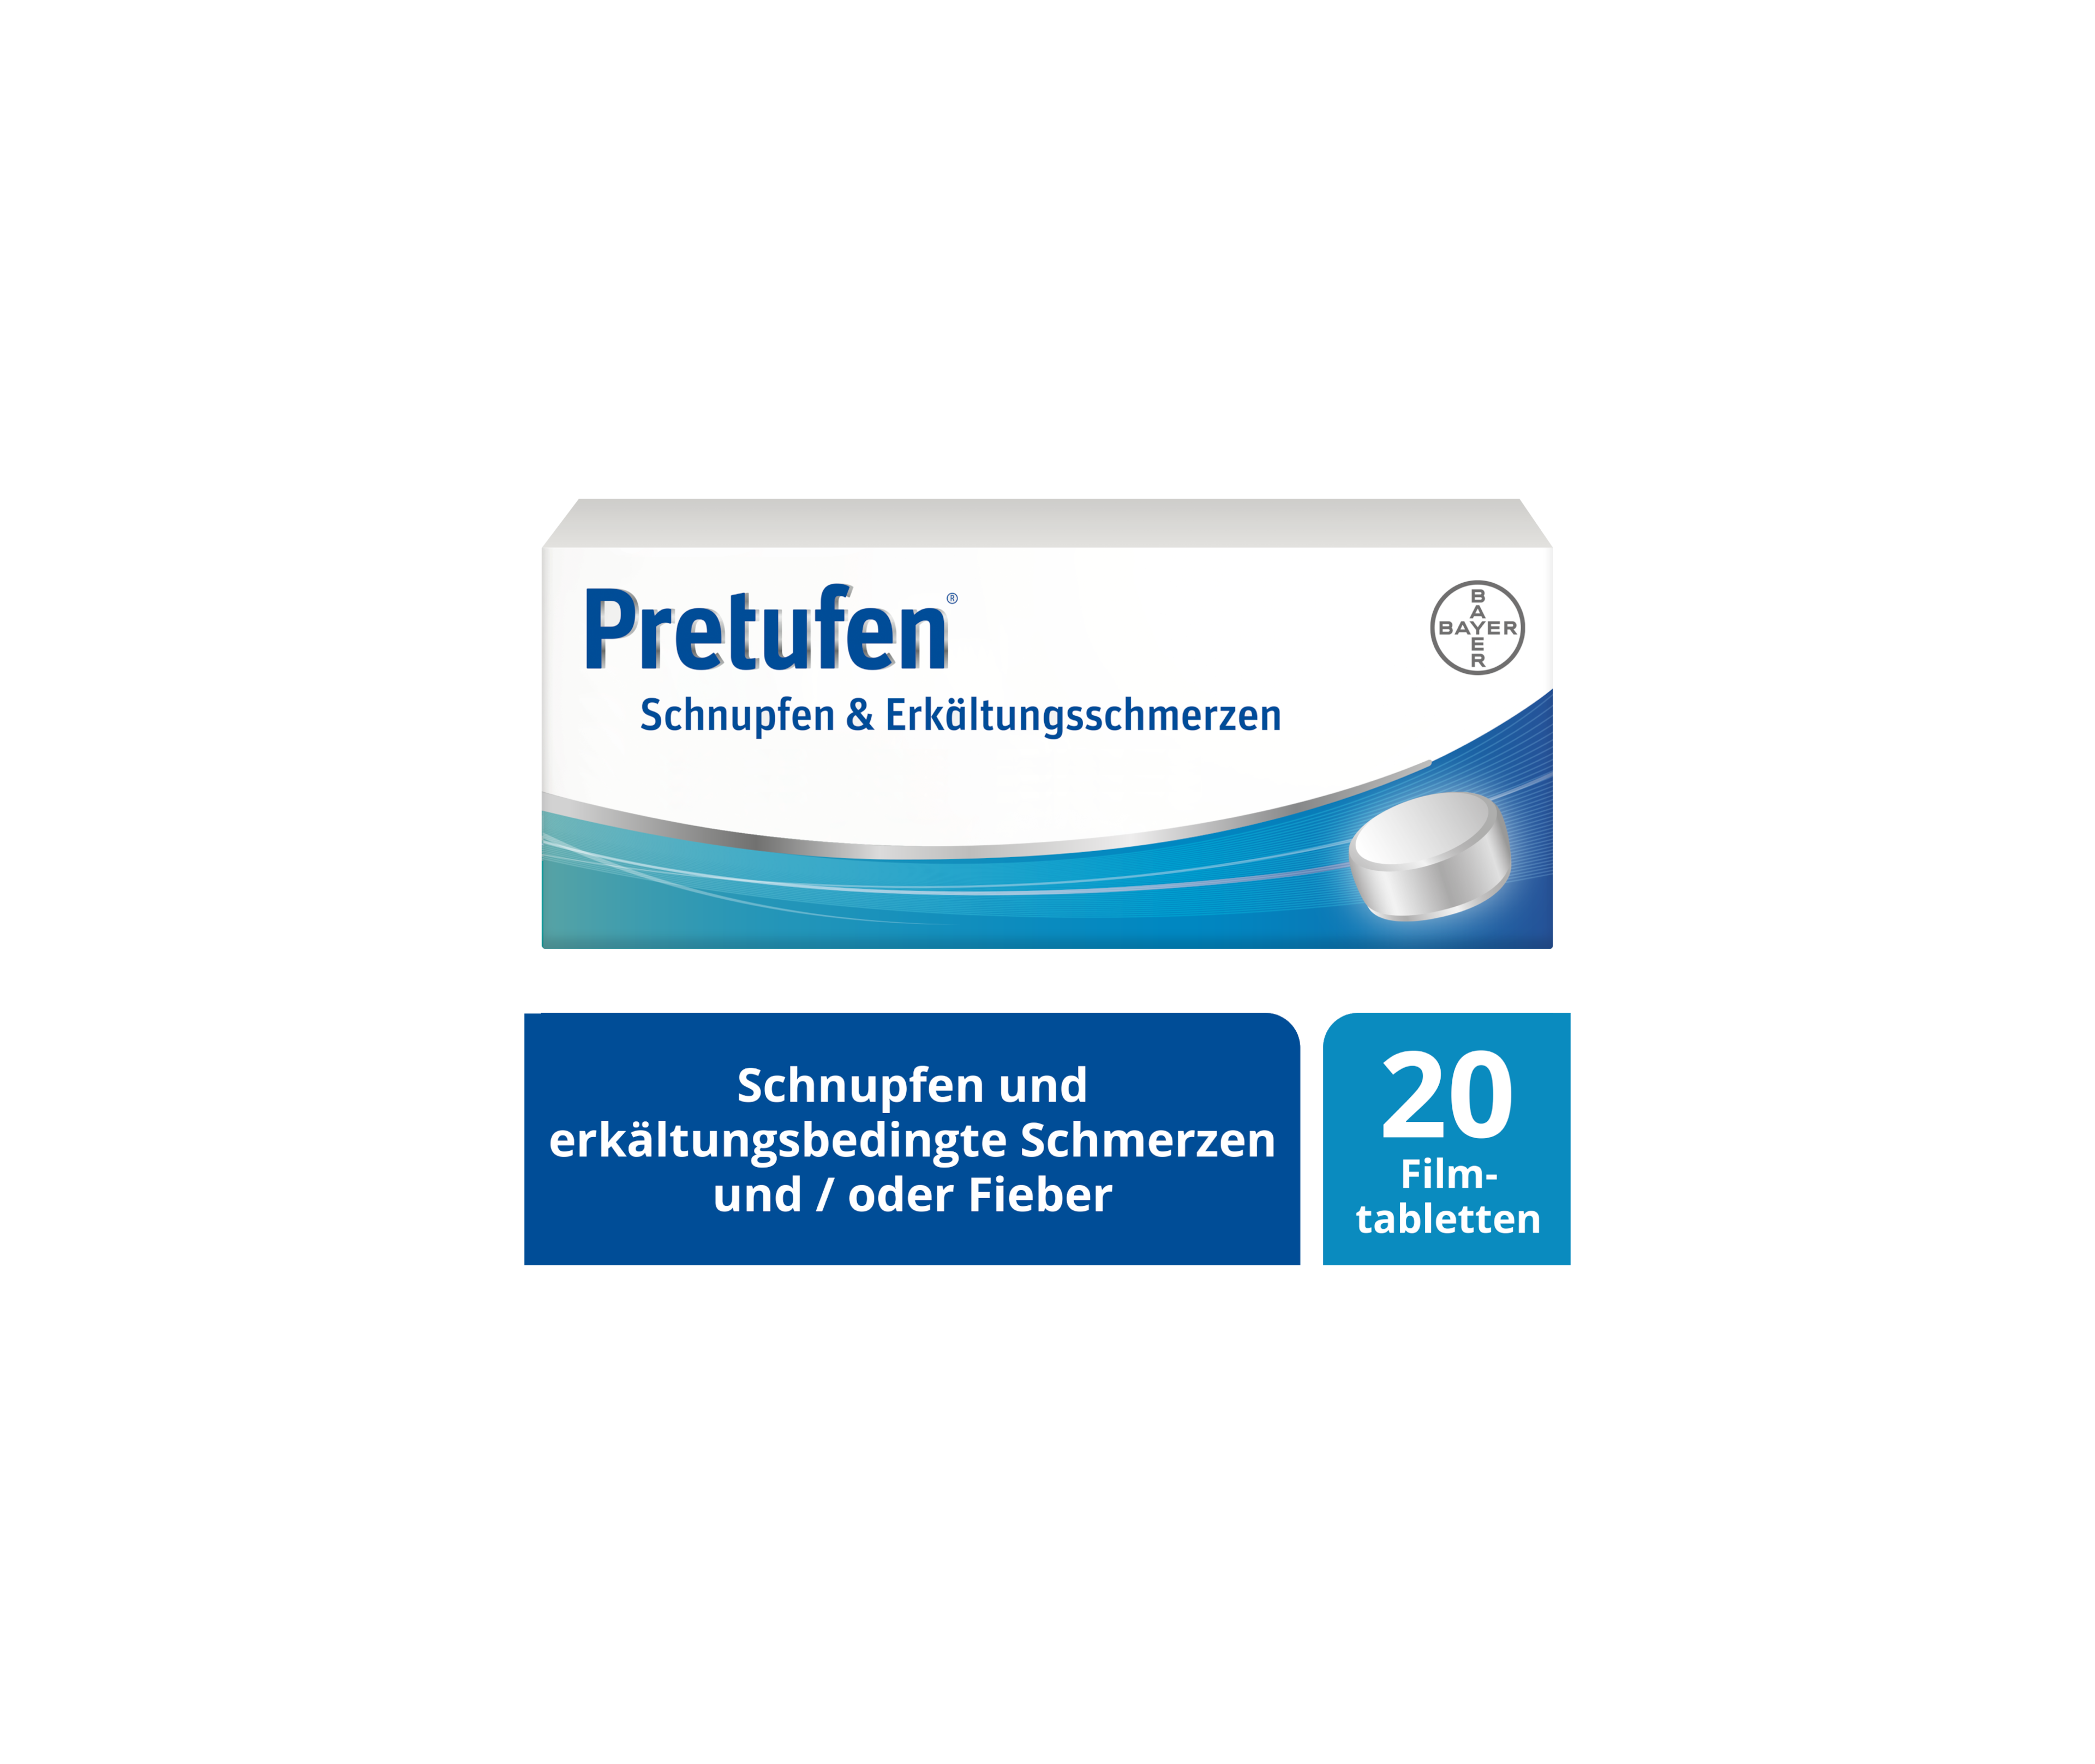 Pretufen® Schnupfen & Erkältungsschmerzen - Packshot